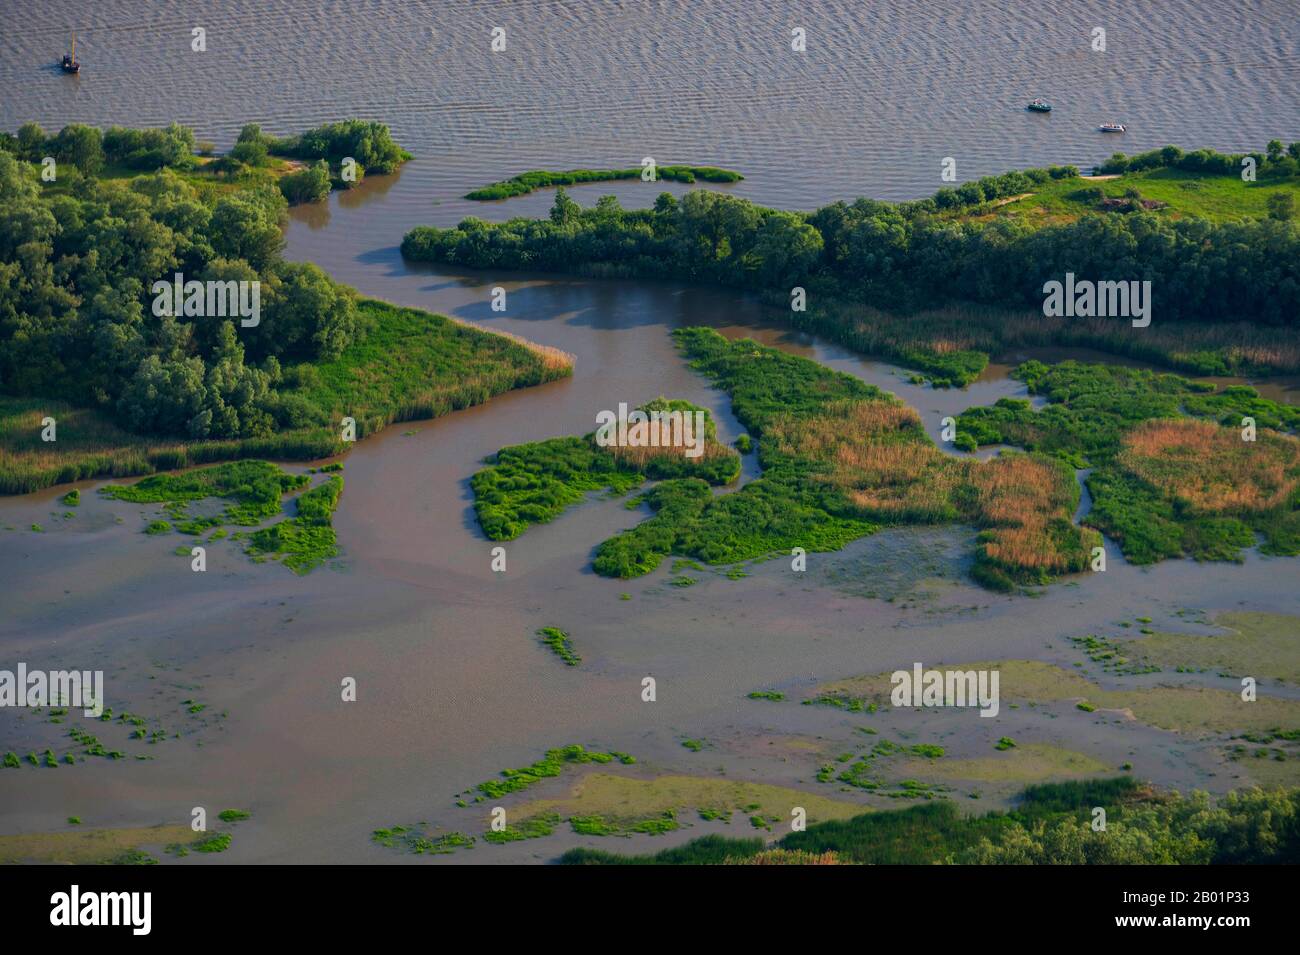 Vasières d'eau douce et forêt alluviale de l'île Hanskalbsand, rivière Elbe, vue aérienne, Allemagne, Basse-Saxe Banque D'Images